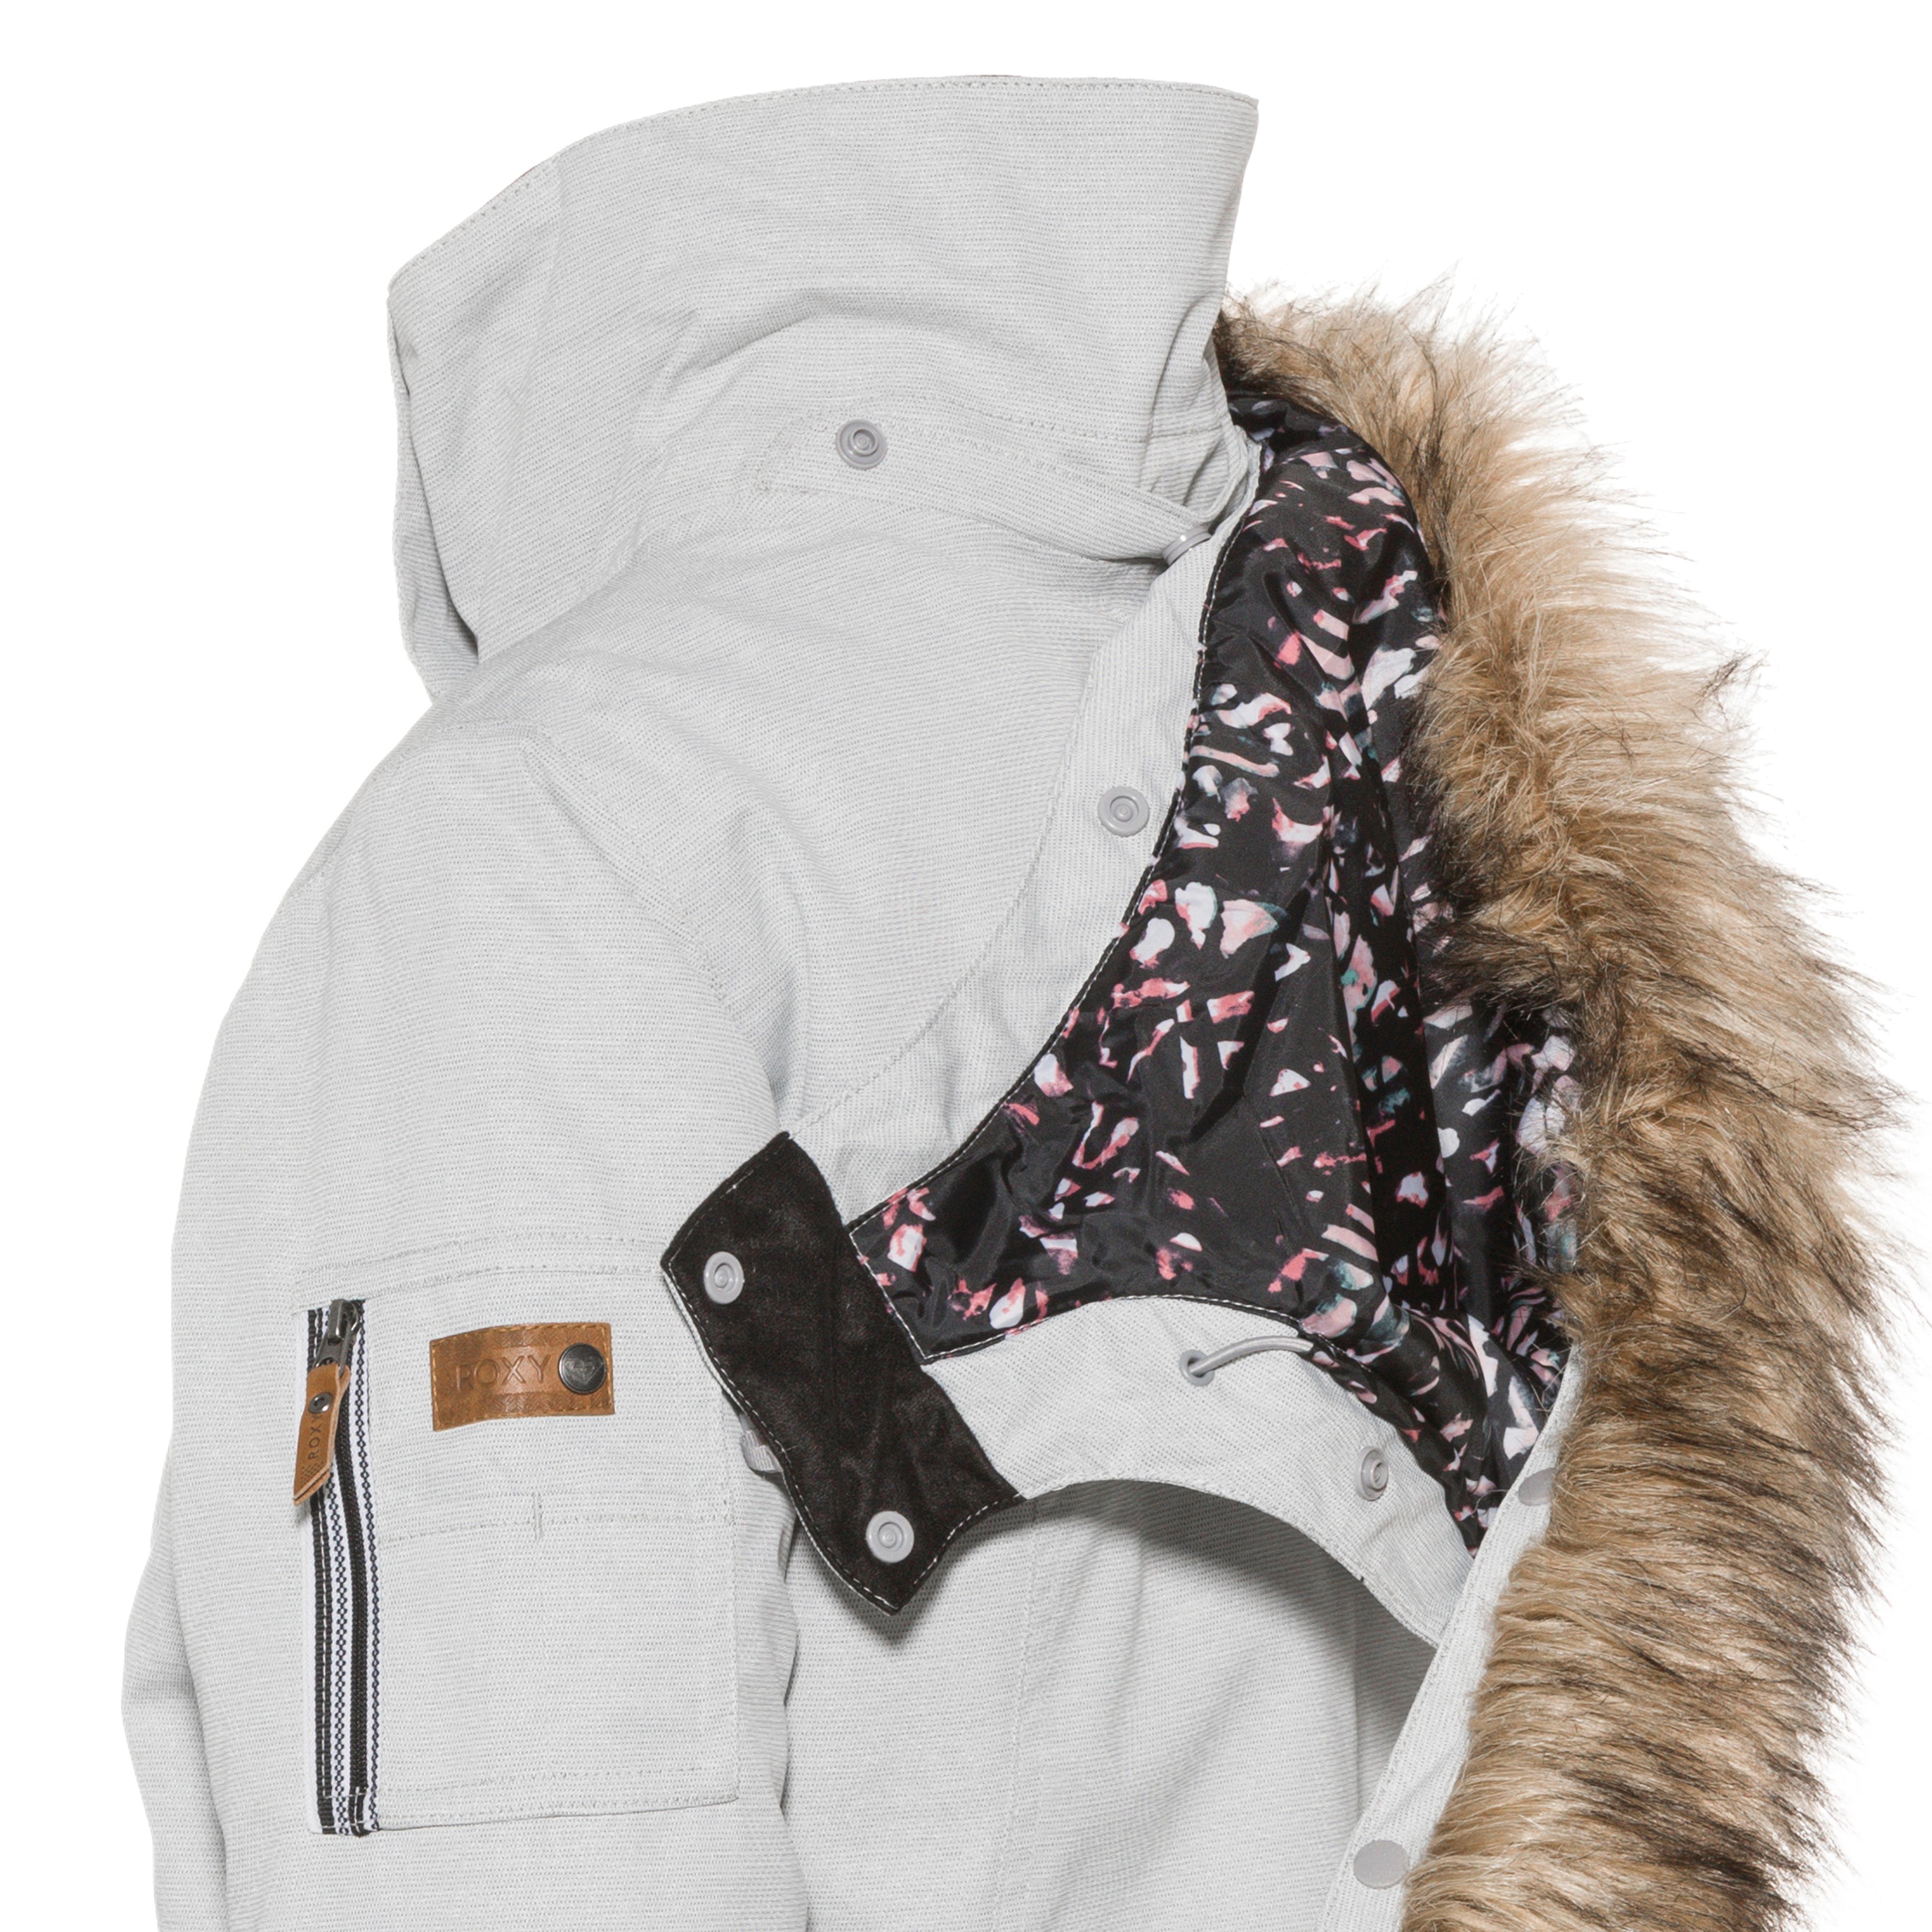 Roxy MEADE Skijacke grey kaufen von Shop SportScheck heather im Damen Online